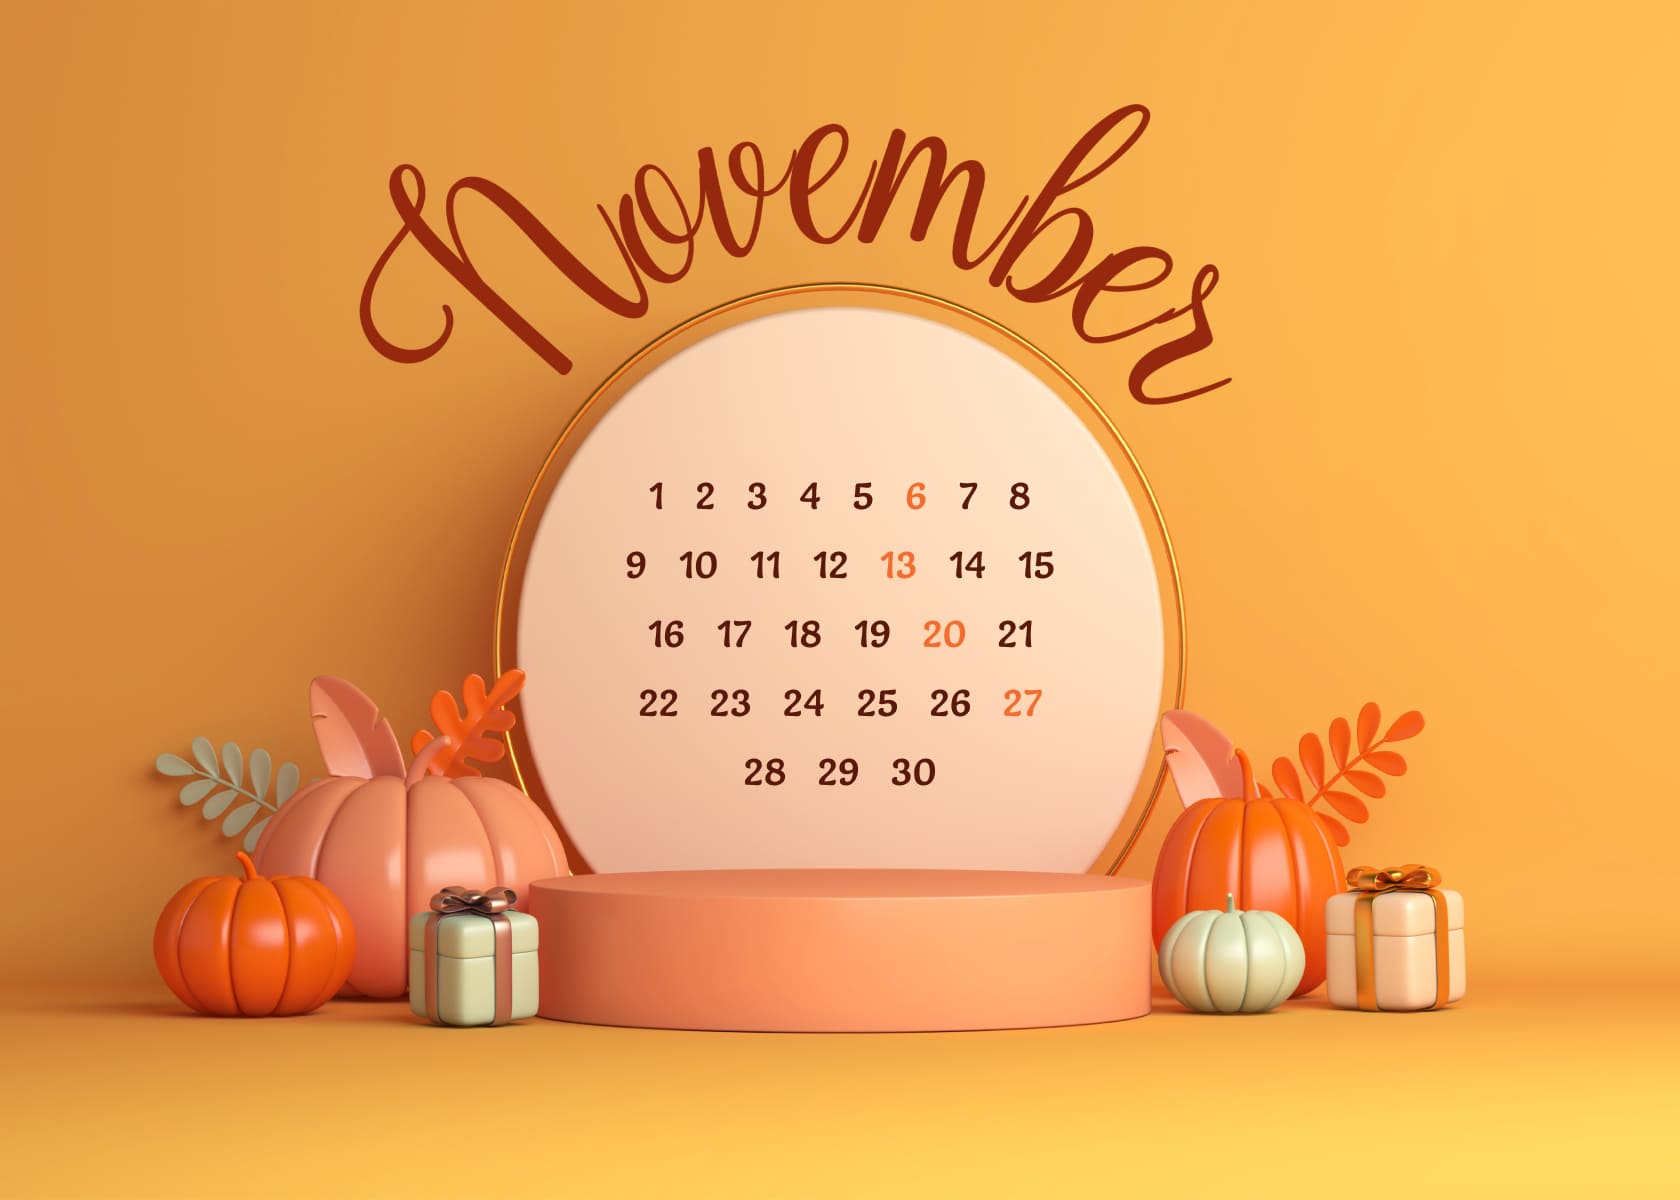 Free November calendar extension 1680х1200.